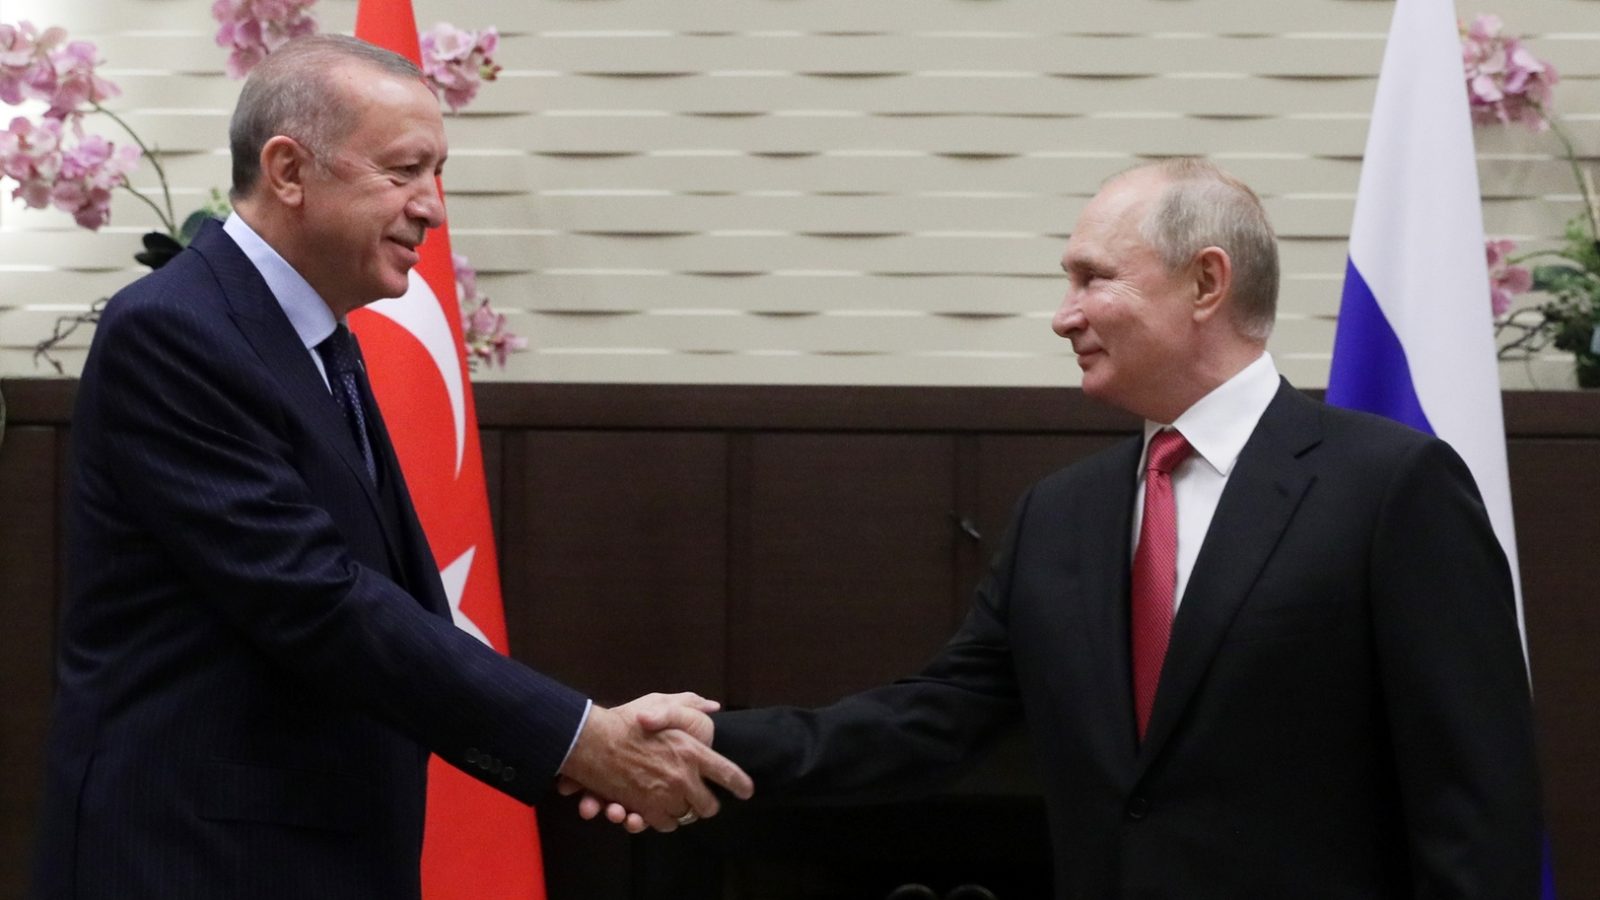  في اتصال مع بوتين/ أردوغان يدعو إلى وقف إطلاق النار في أوكرانيا بشكل عاجل